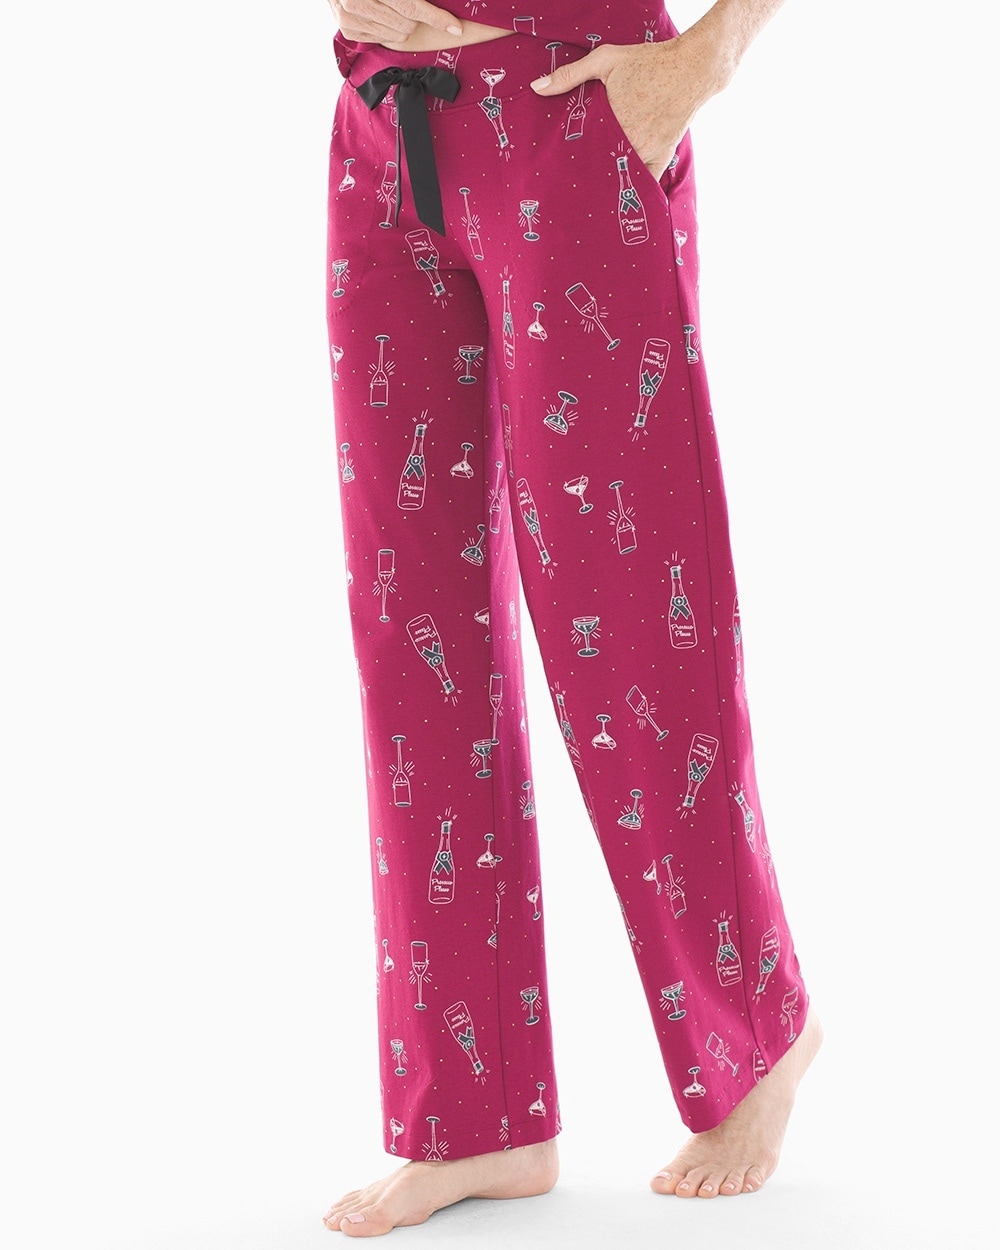 Embraceable Pajama Pants Prosecco Please Cranberry TL